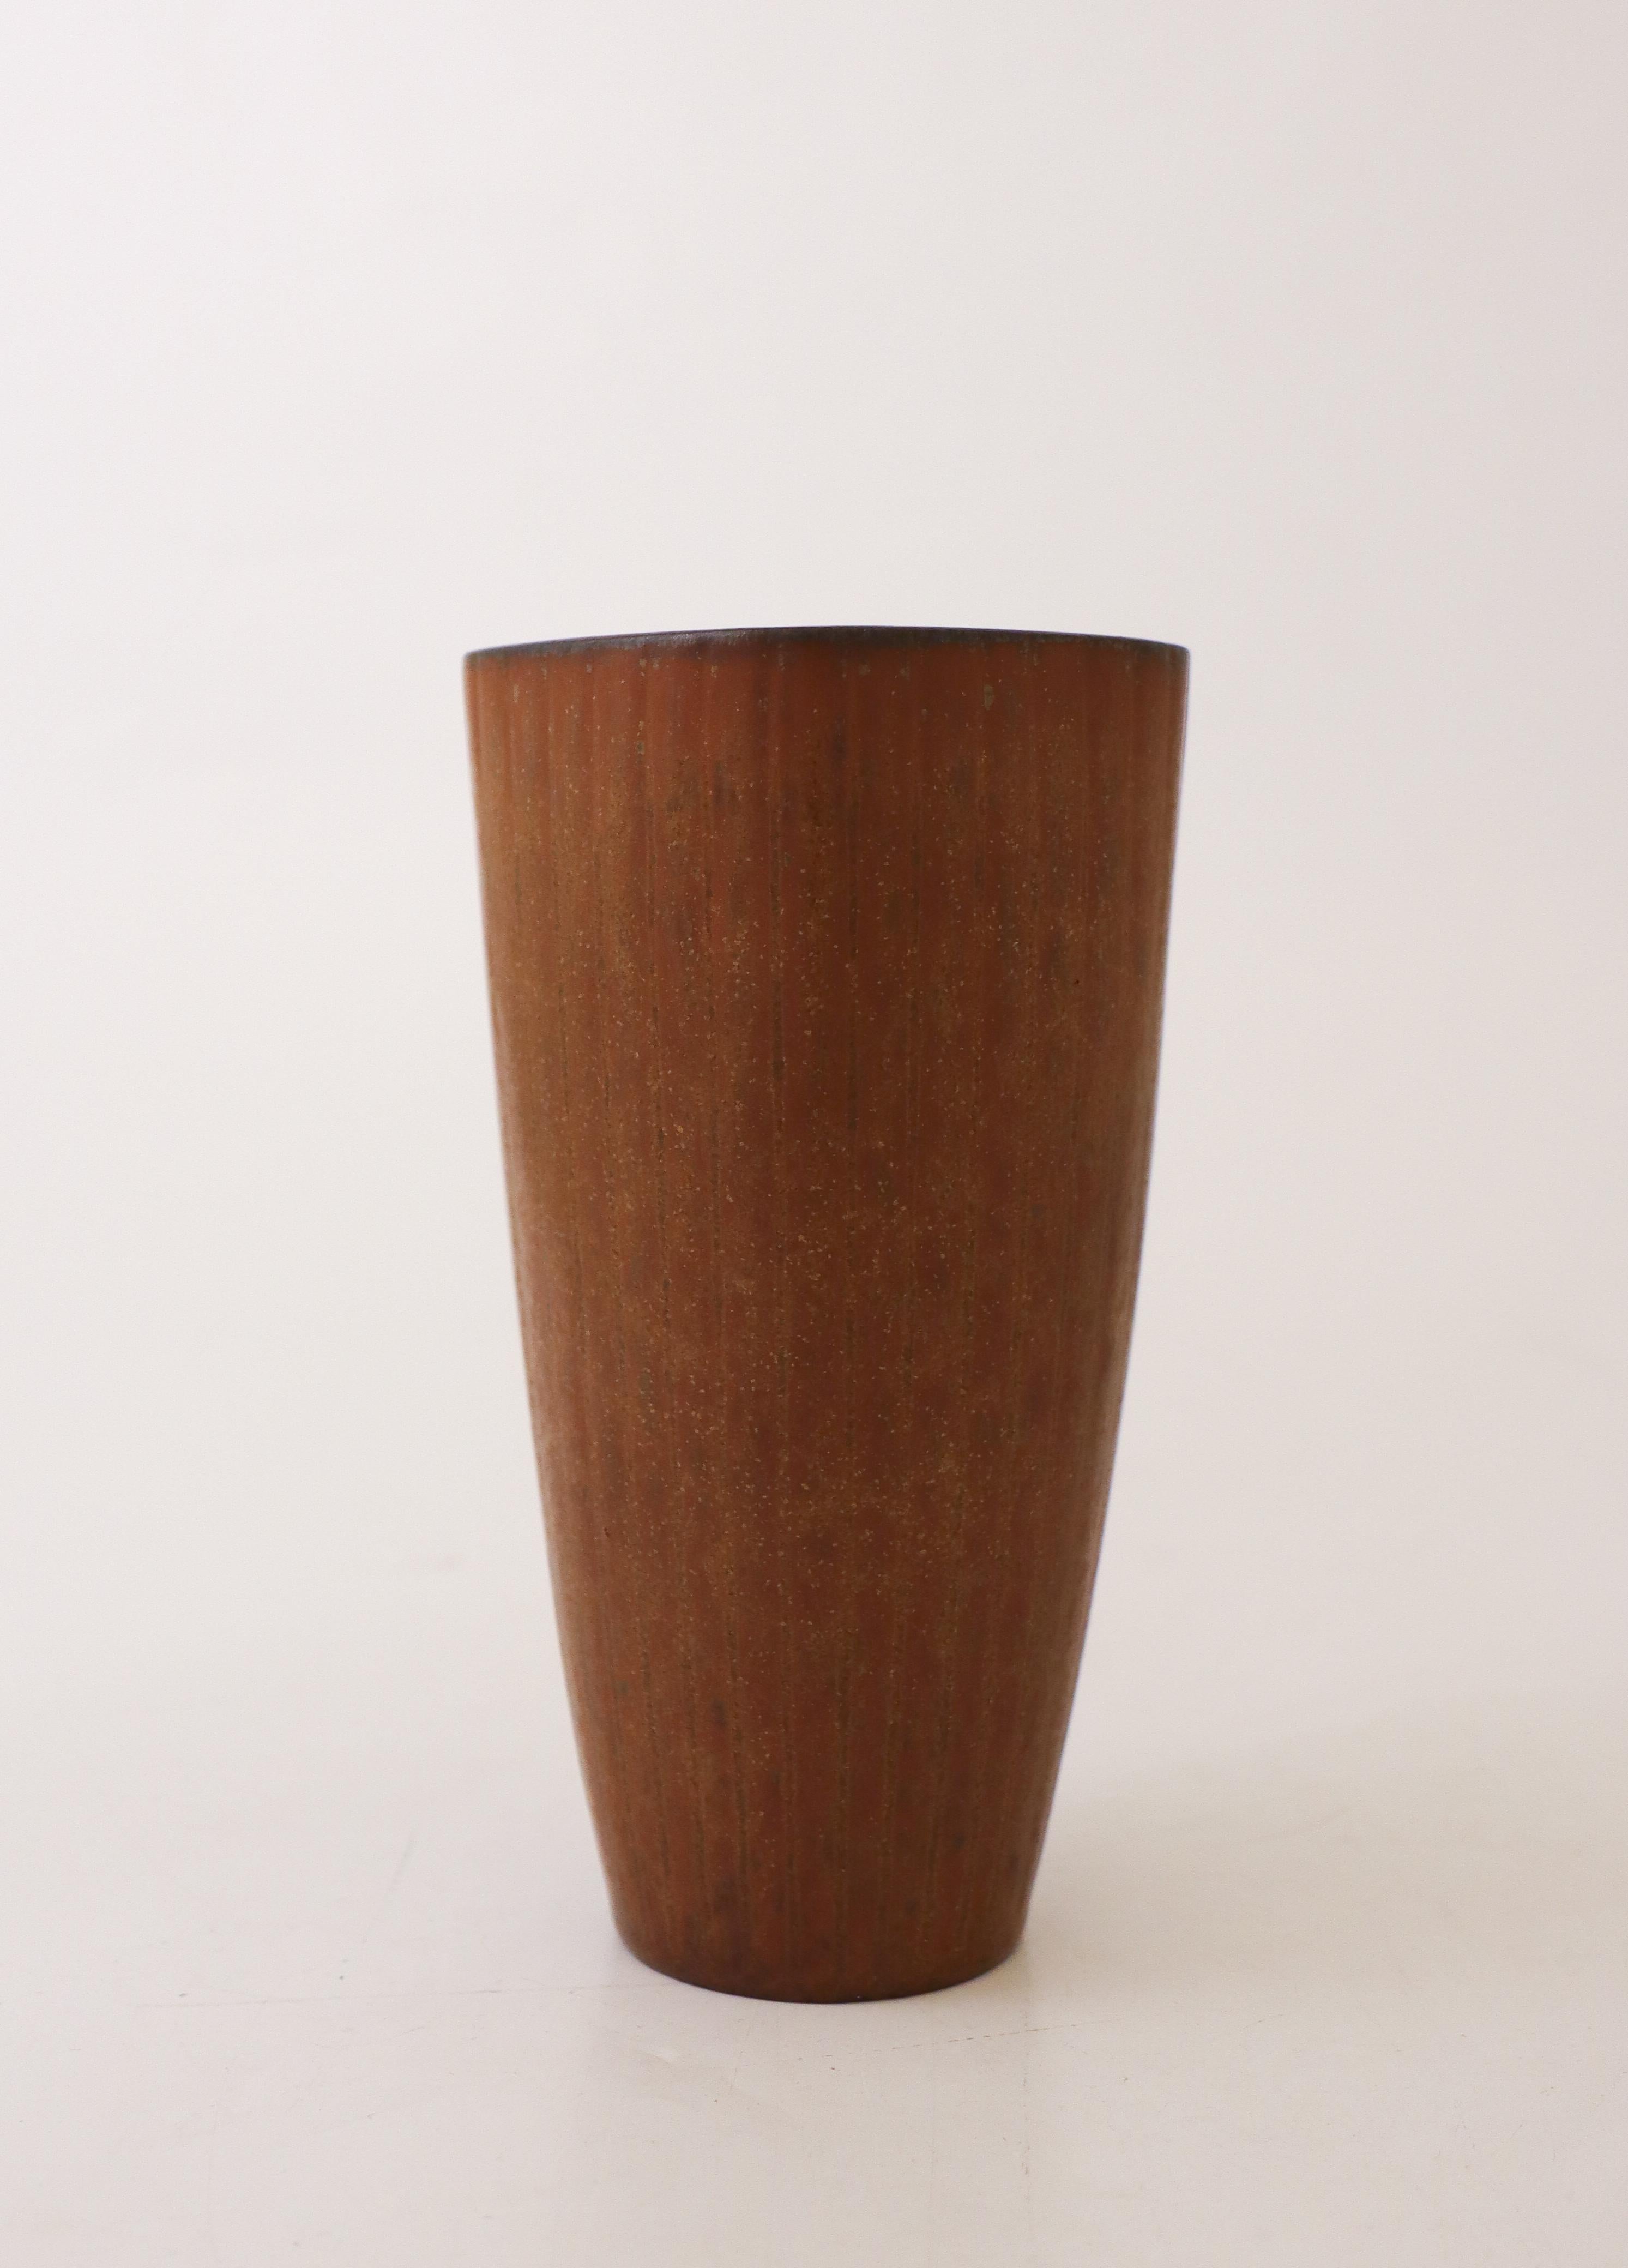 Eine schöne braune, quadratische Vase, entworfen von Gunnar Nylund in Rörstrand. Die Vase ist 15 cm hoch und hat einen Durchmesser von 7,5 cm. Es ist in neuwertigem Zustand und als 1. Qualität gekennzeichnet. 

Gunnar Nylund wurde 1904 in Paris